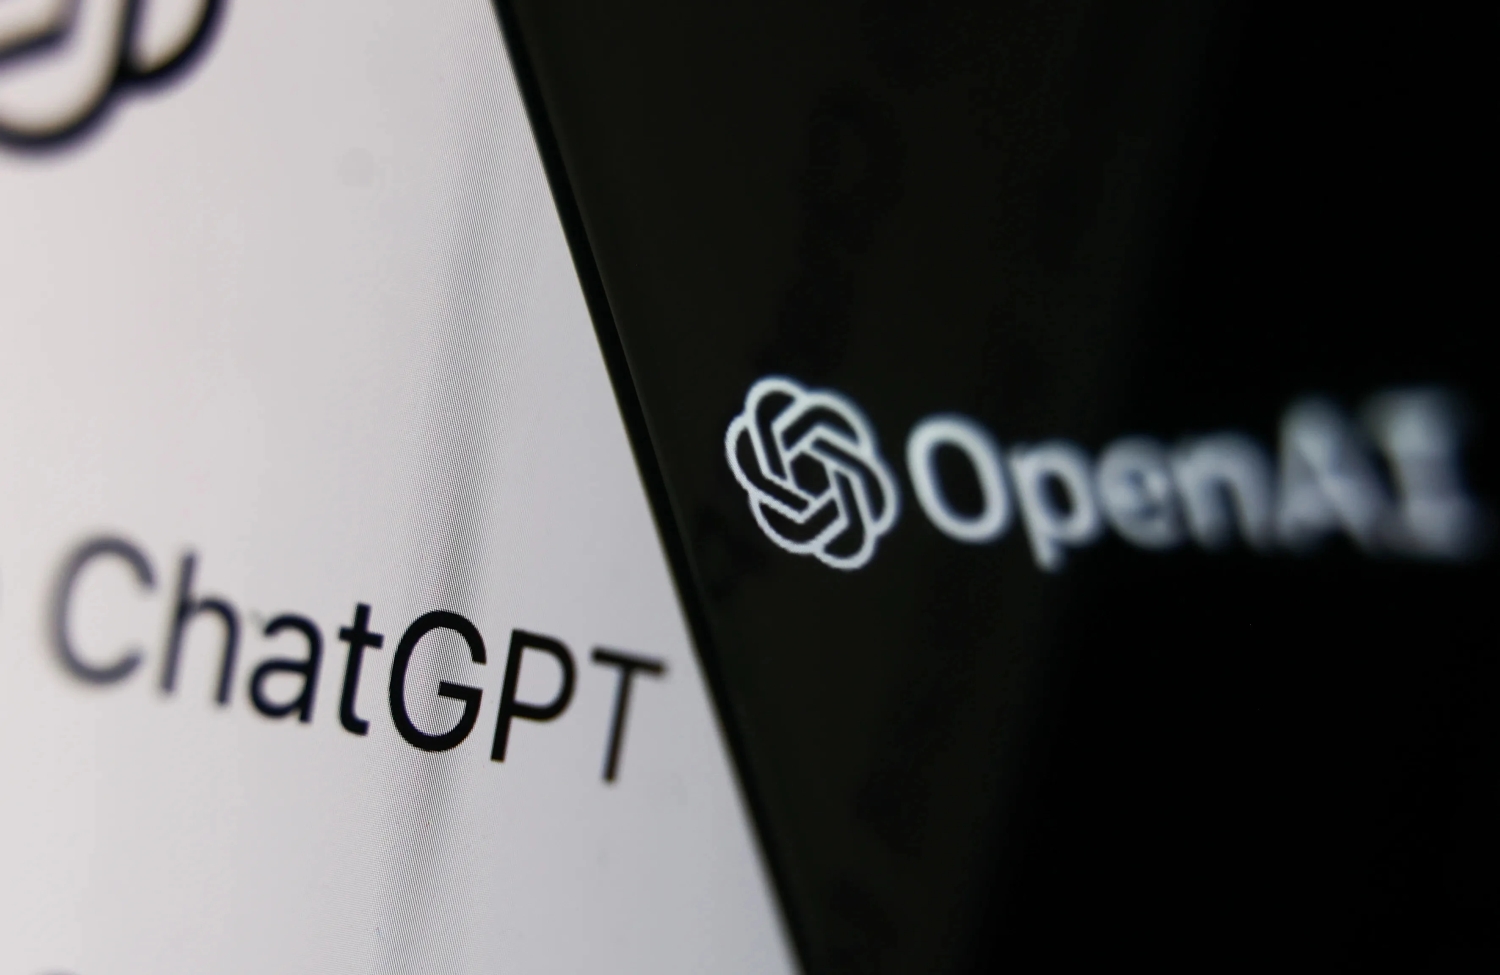 Der ChatGPT-Name neben einem OpenAI-Logo auf einem schwarz-weißen Hintergrund.